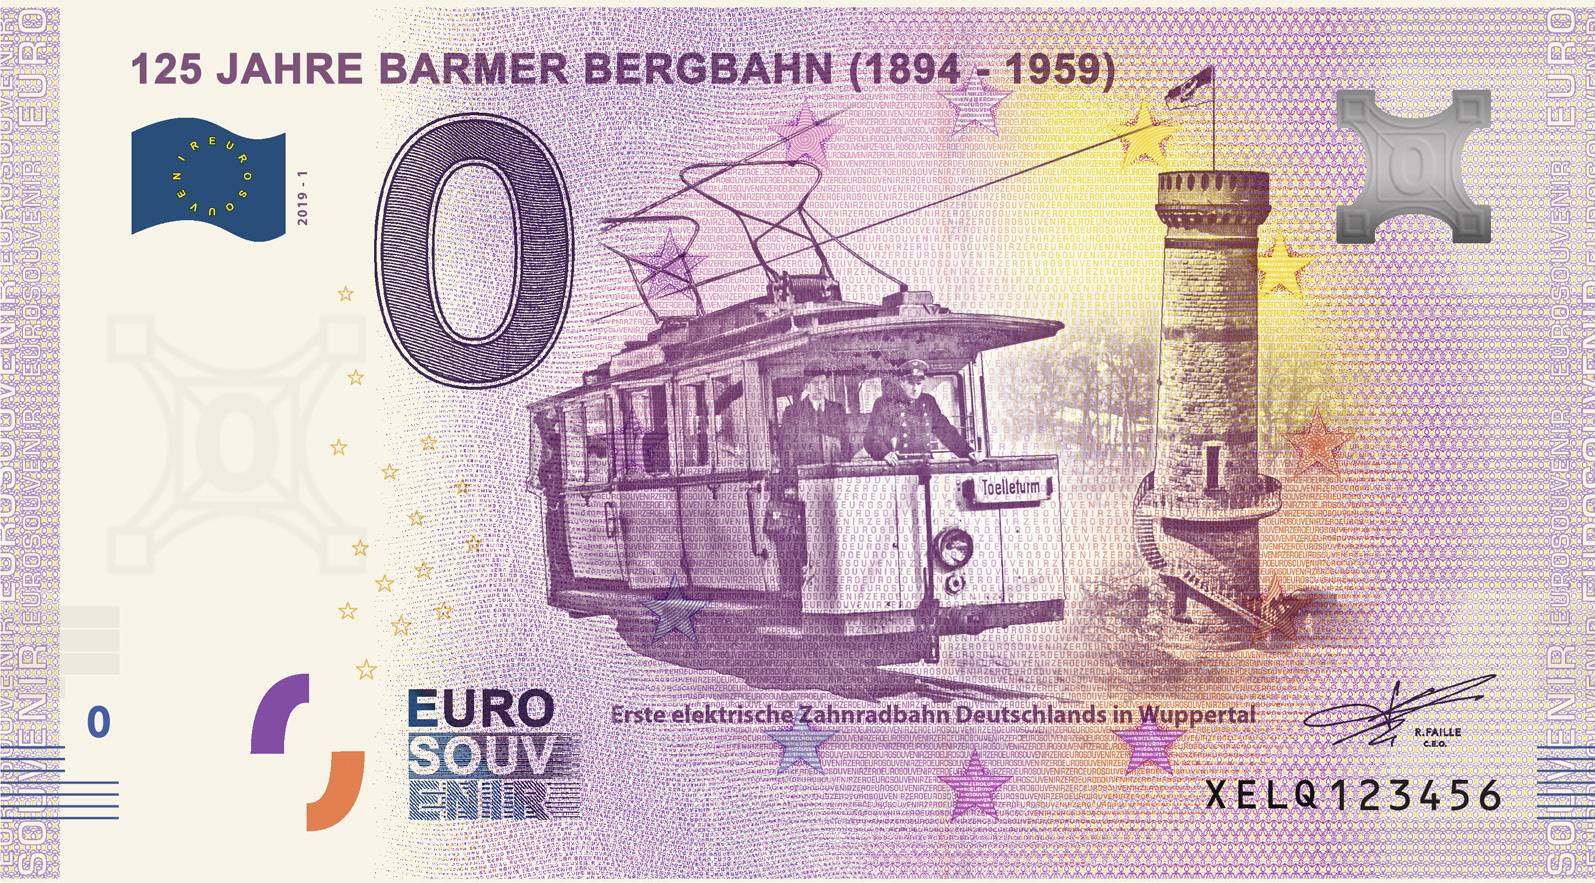 Ein 0-Euro-Schein für die Barmer Bergbahn